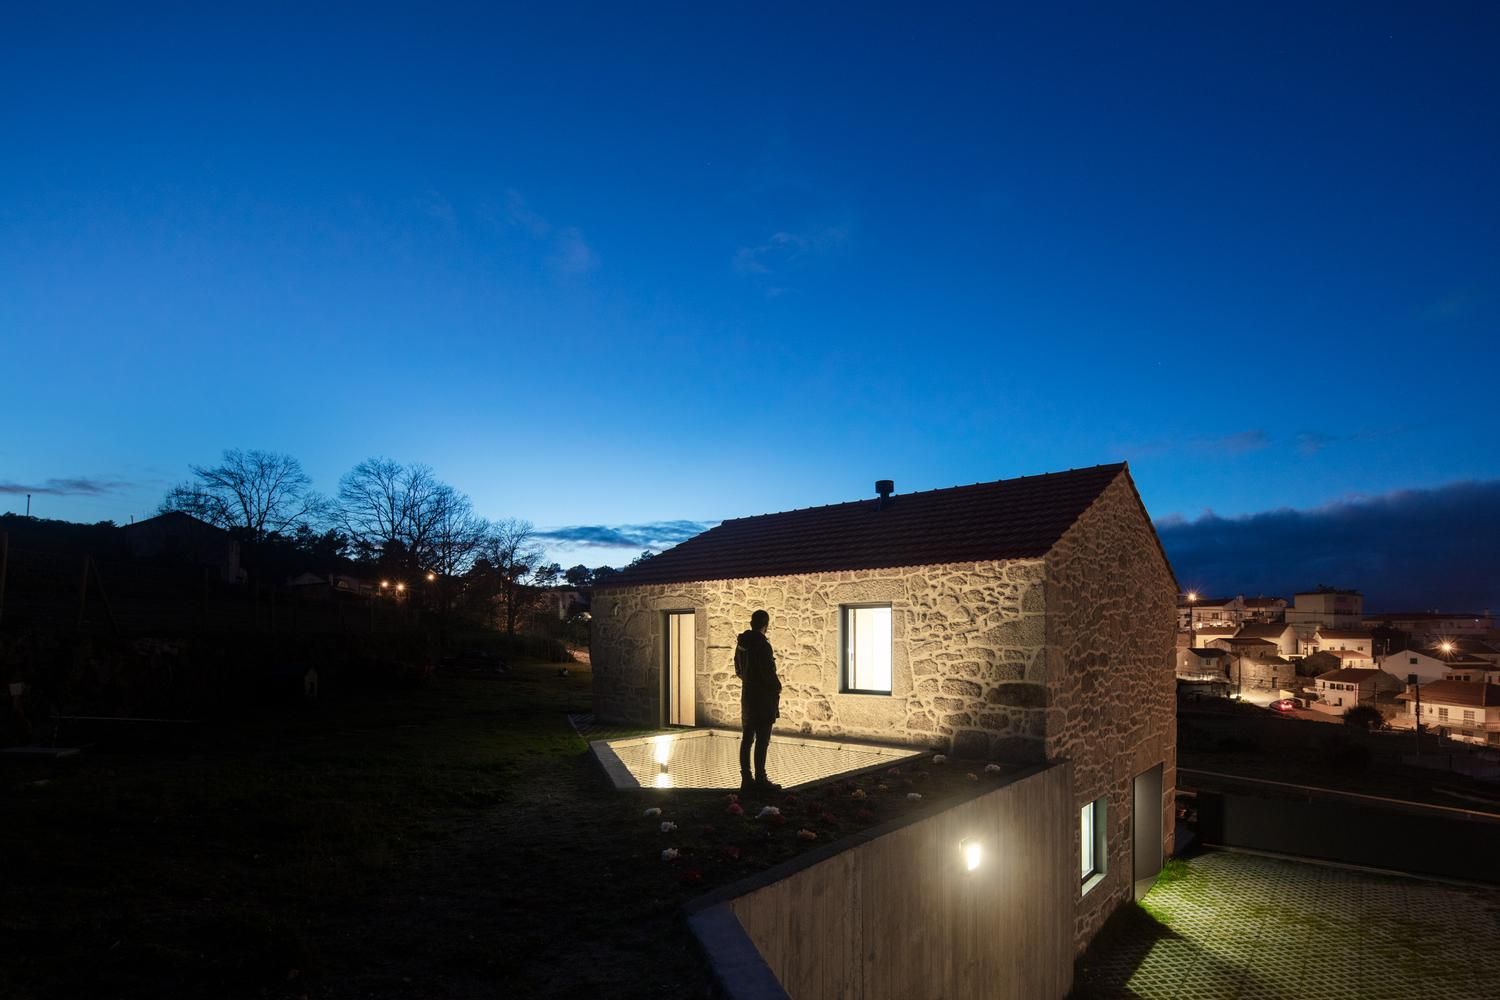 Ради безопасности: в Португалии построили жилье с рыболовной сеткой над двором – фото